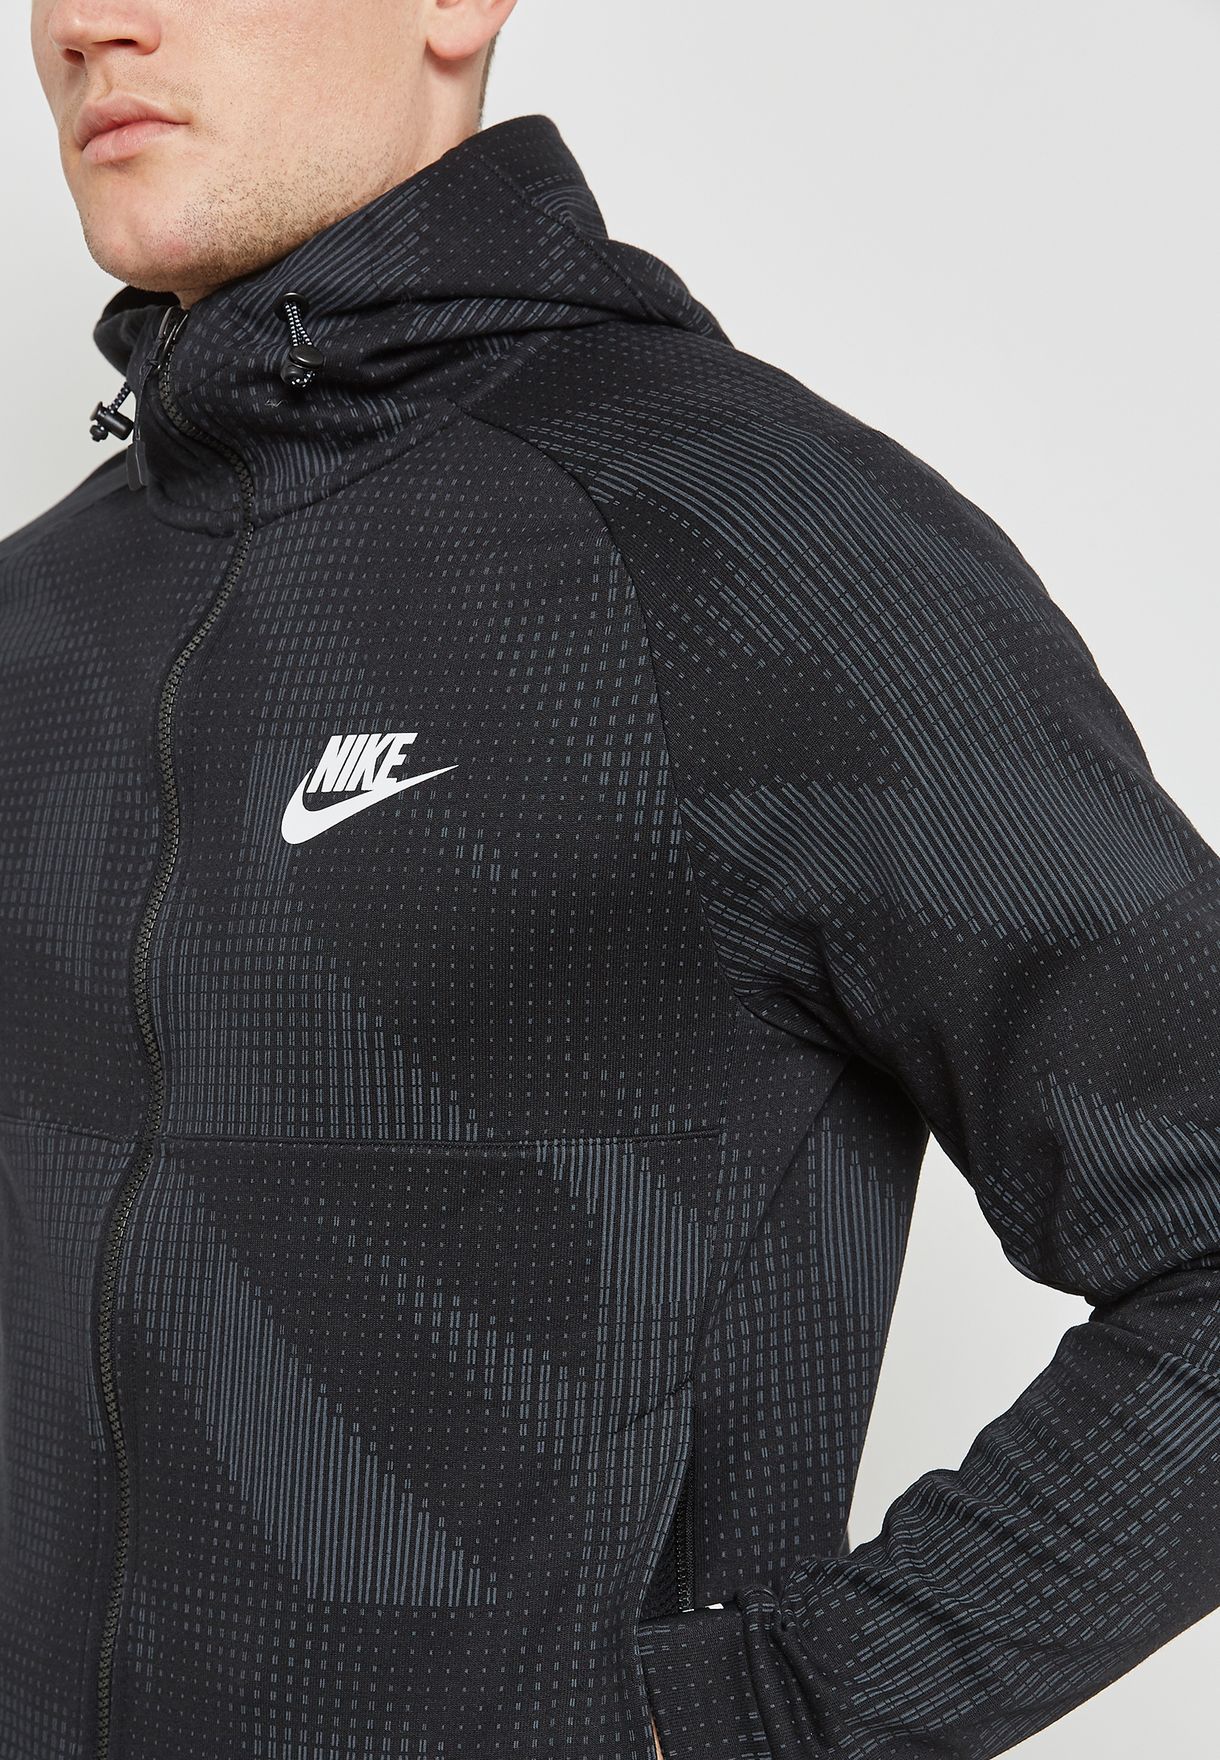 Buy Nike Grey Av15 Fleece Sweatshirt For Men In Mena Worldwide 861744 073 [ 1760 x 1220 Pixel ]